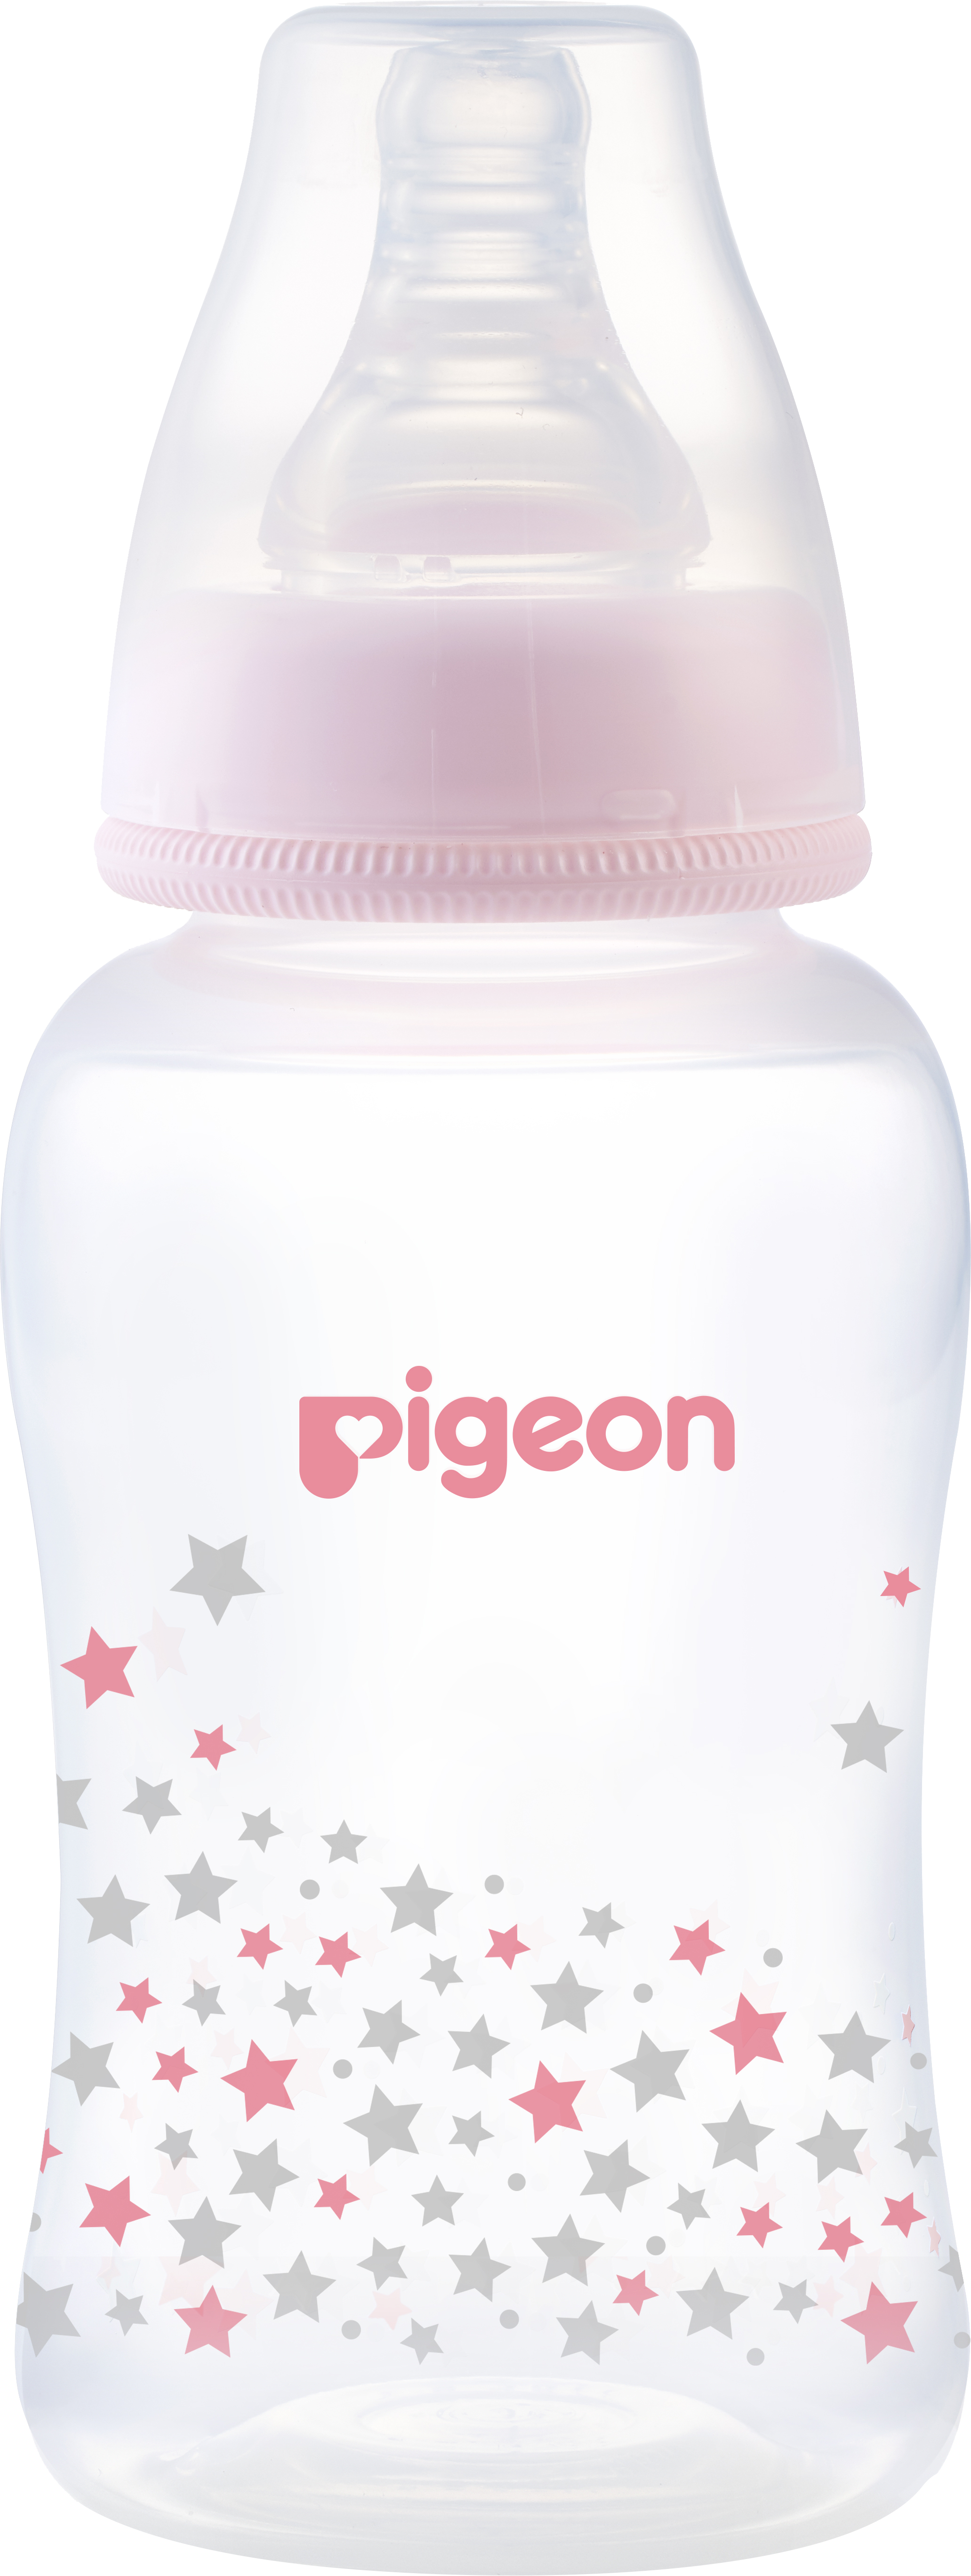 Hình ảnh Bình sữa cổ hẹp PP Streamline hình ngôi sao hồng/xanh Pigeon 150ml (S)